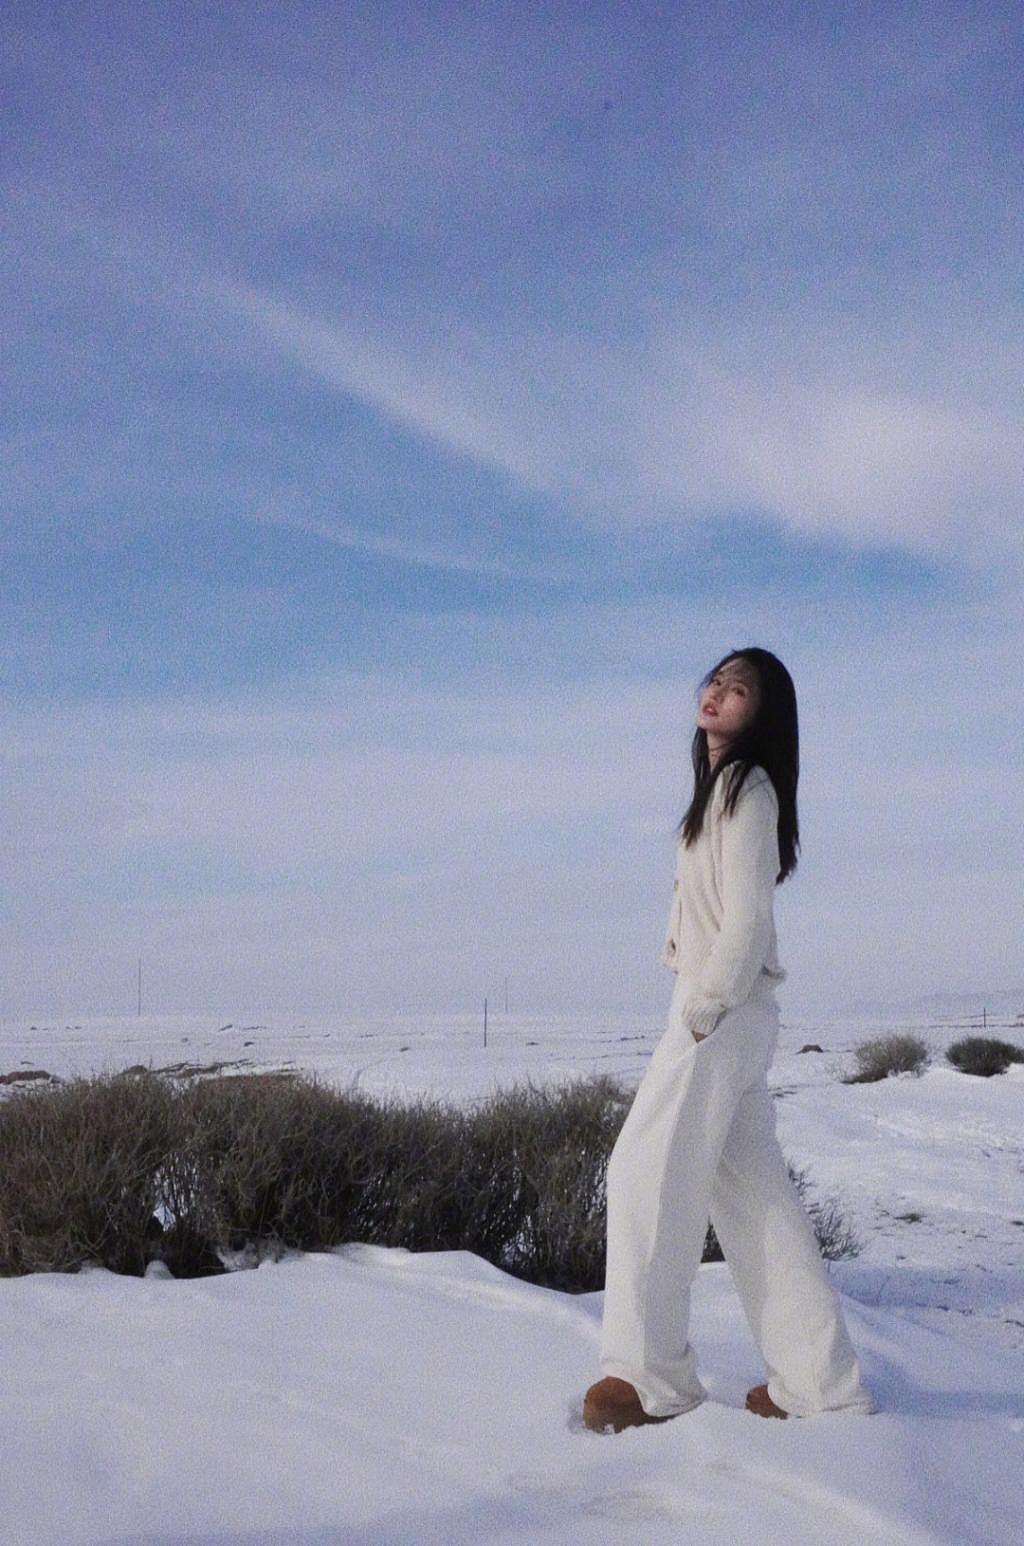 李沁穿白衣在雪地奔跑 笑容灿烂甜美 - 6